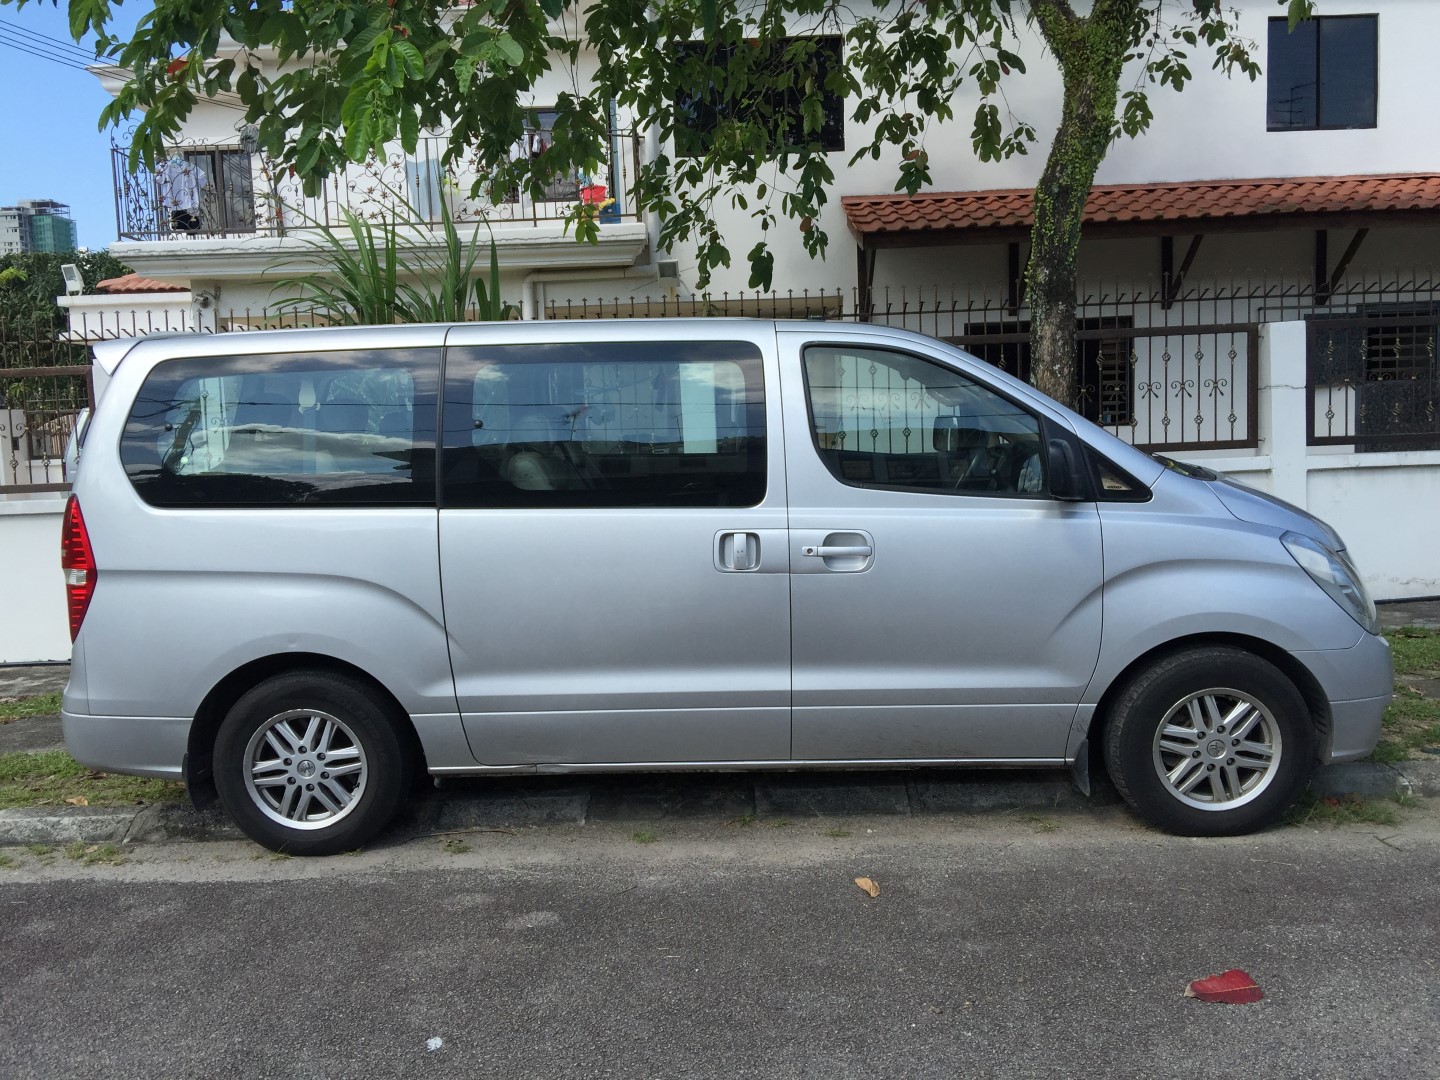 Malaysia-Singapore-Johor-Taxi-Transport-36